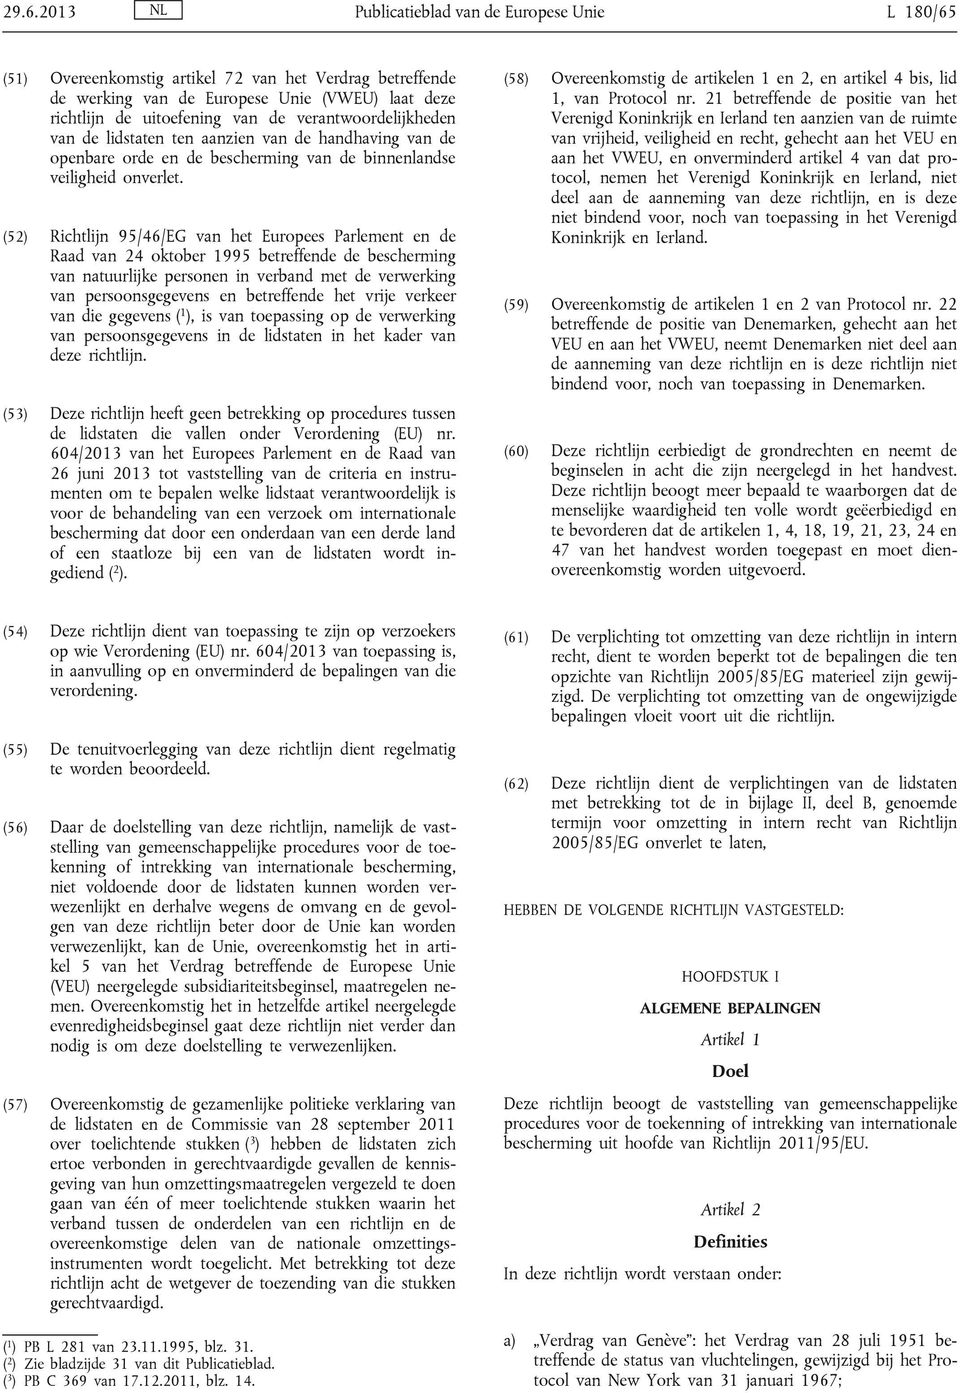 (52) Richtlijn 95/46/EG van het Europees Parlement en de Raad van 24 oktober 1995 betreffende de bescherming van natuurlijke personen in verband met de verwerking van persoonsgegevens en betreffende